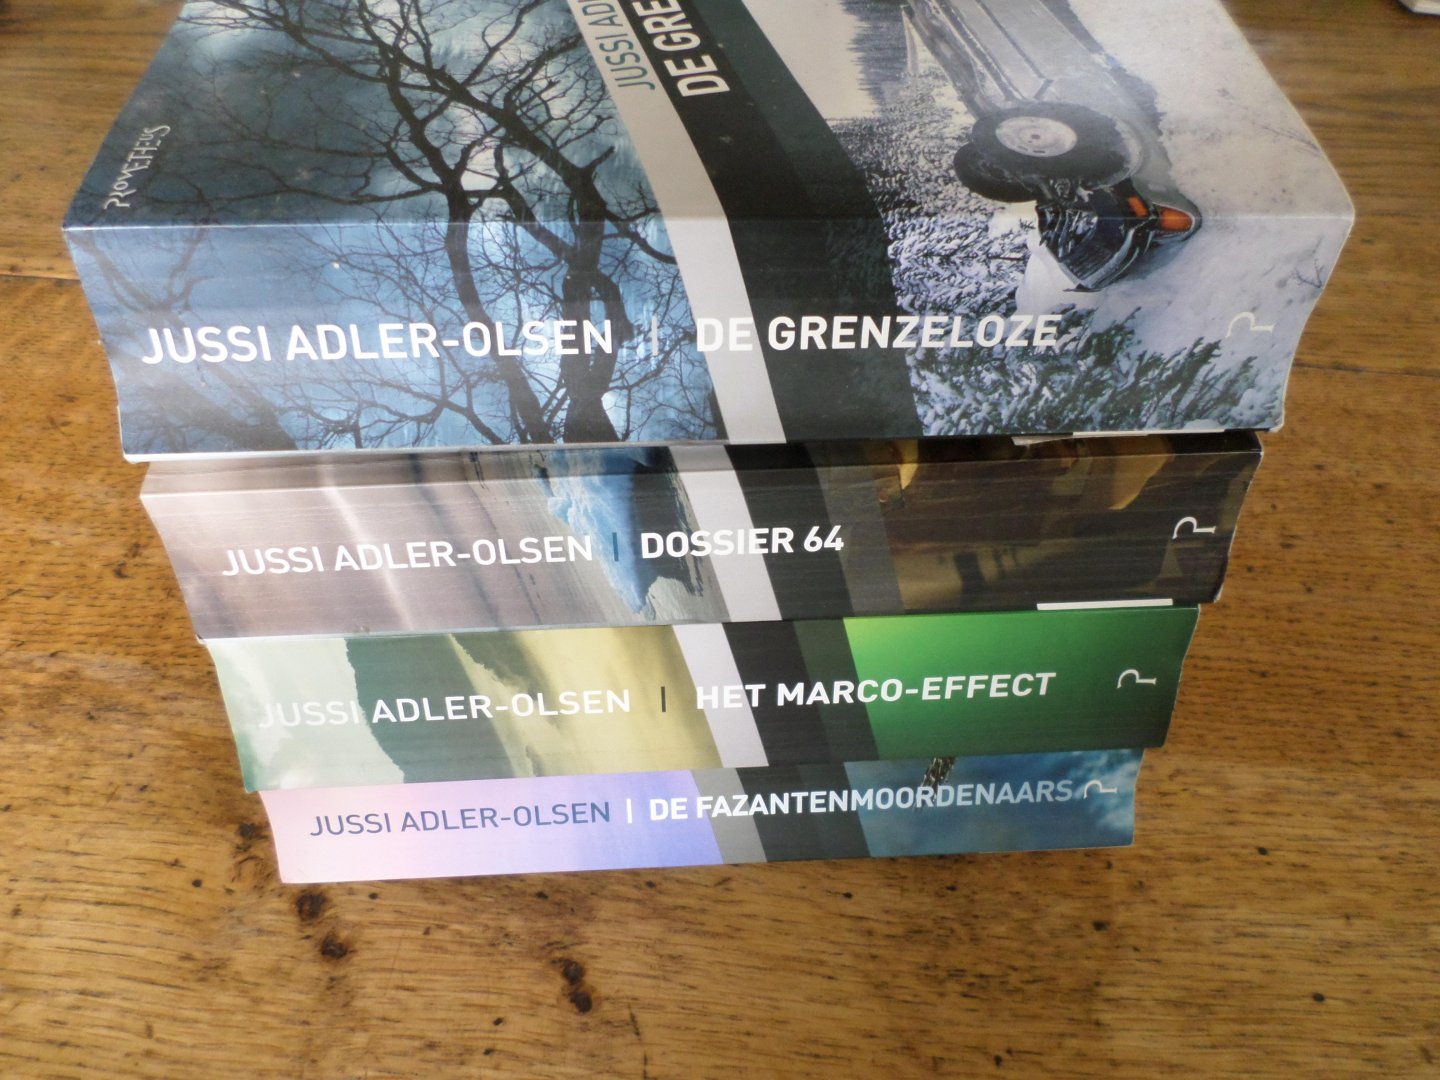 Adler-Olsen, Jussi - Serie Q De fazantenmoordenaars